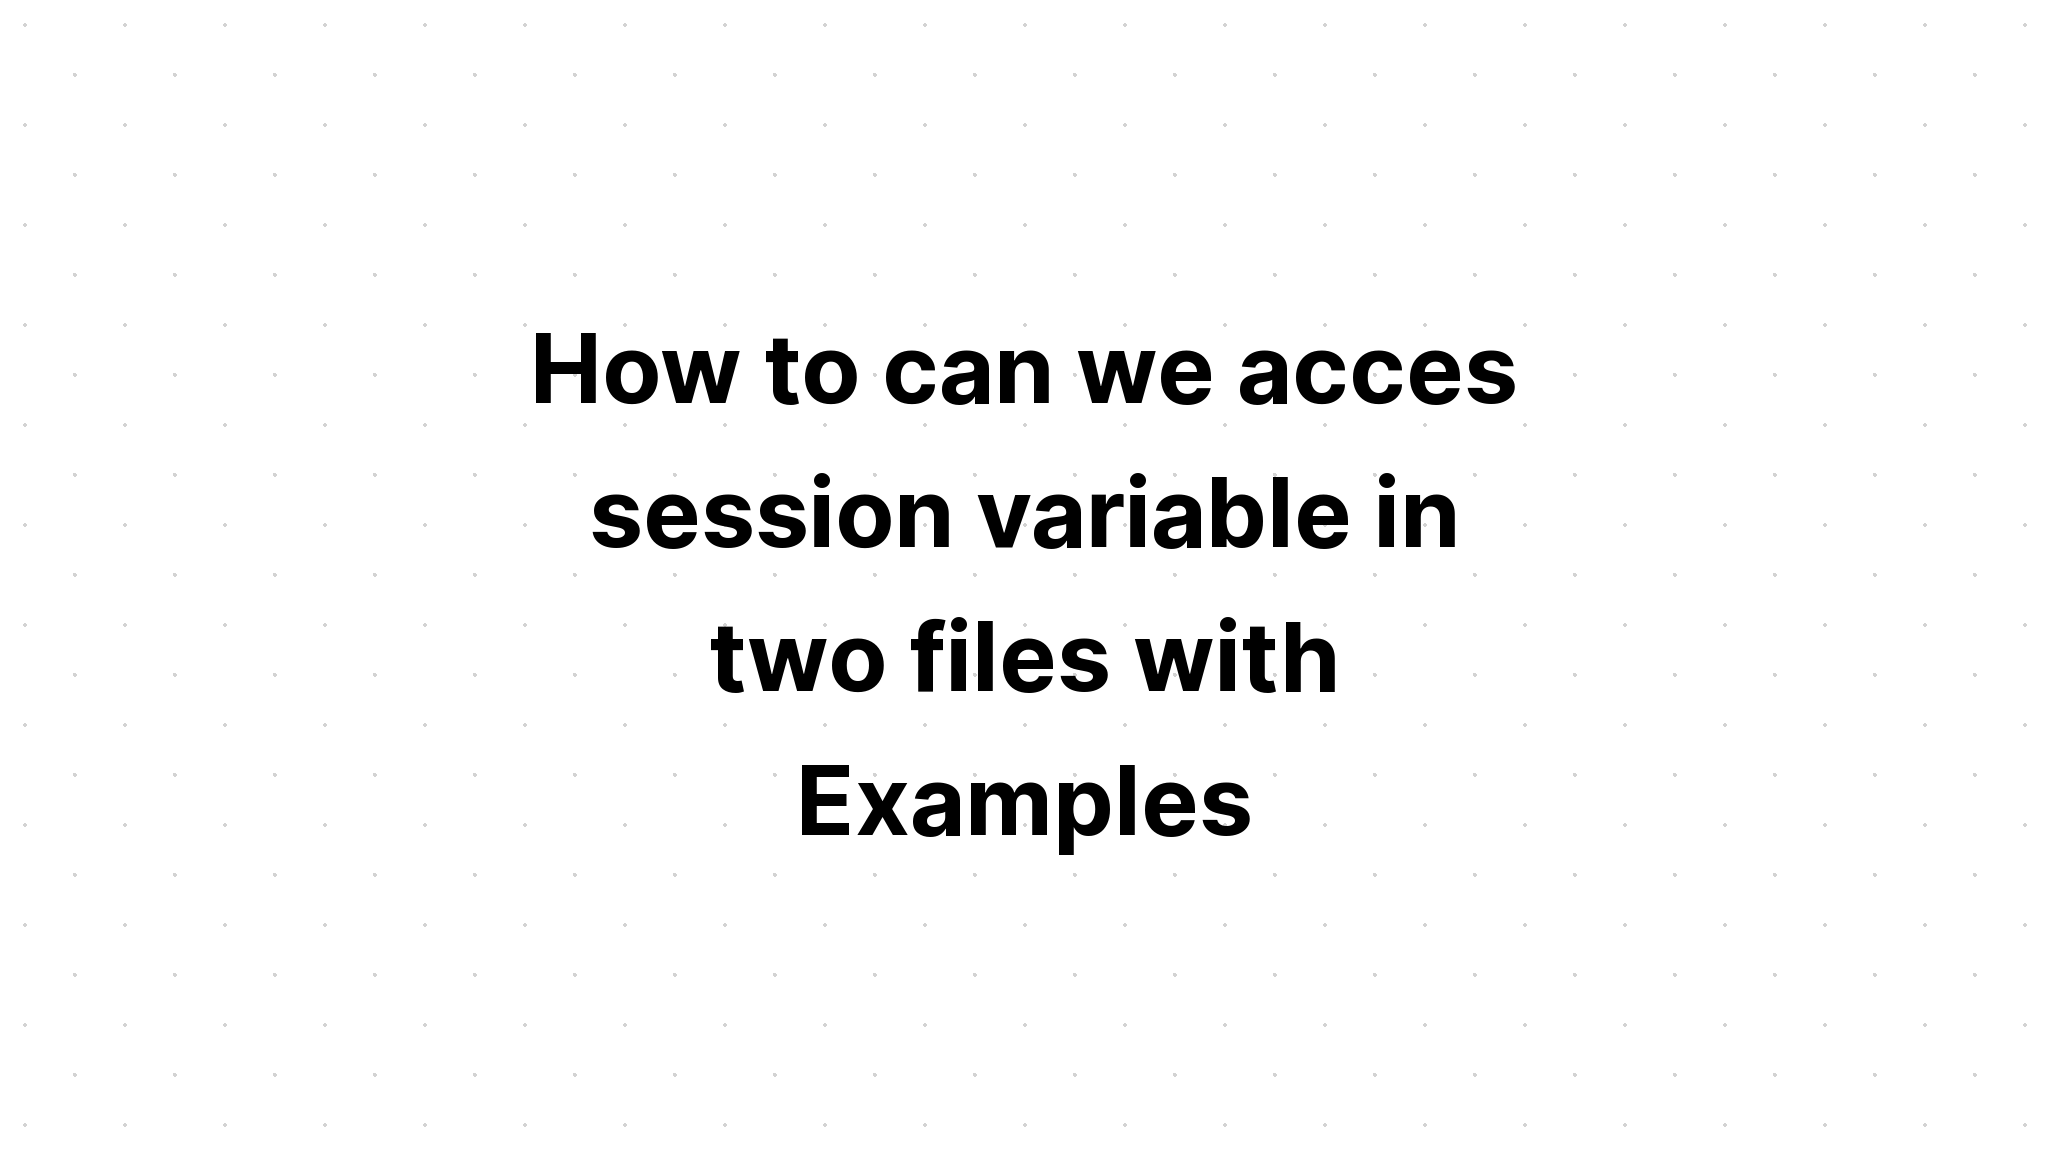 Bagaimana kita bisa mengakses variabel sesi dalam dua file dengan Contoh